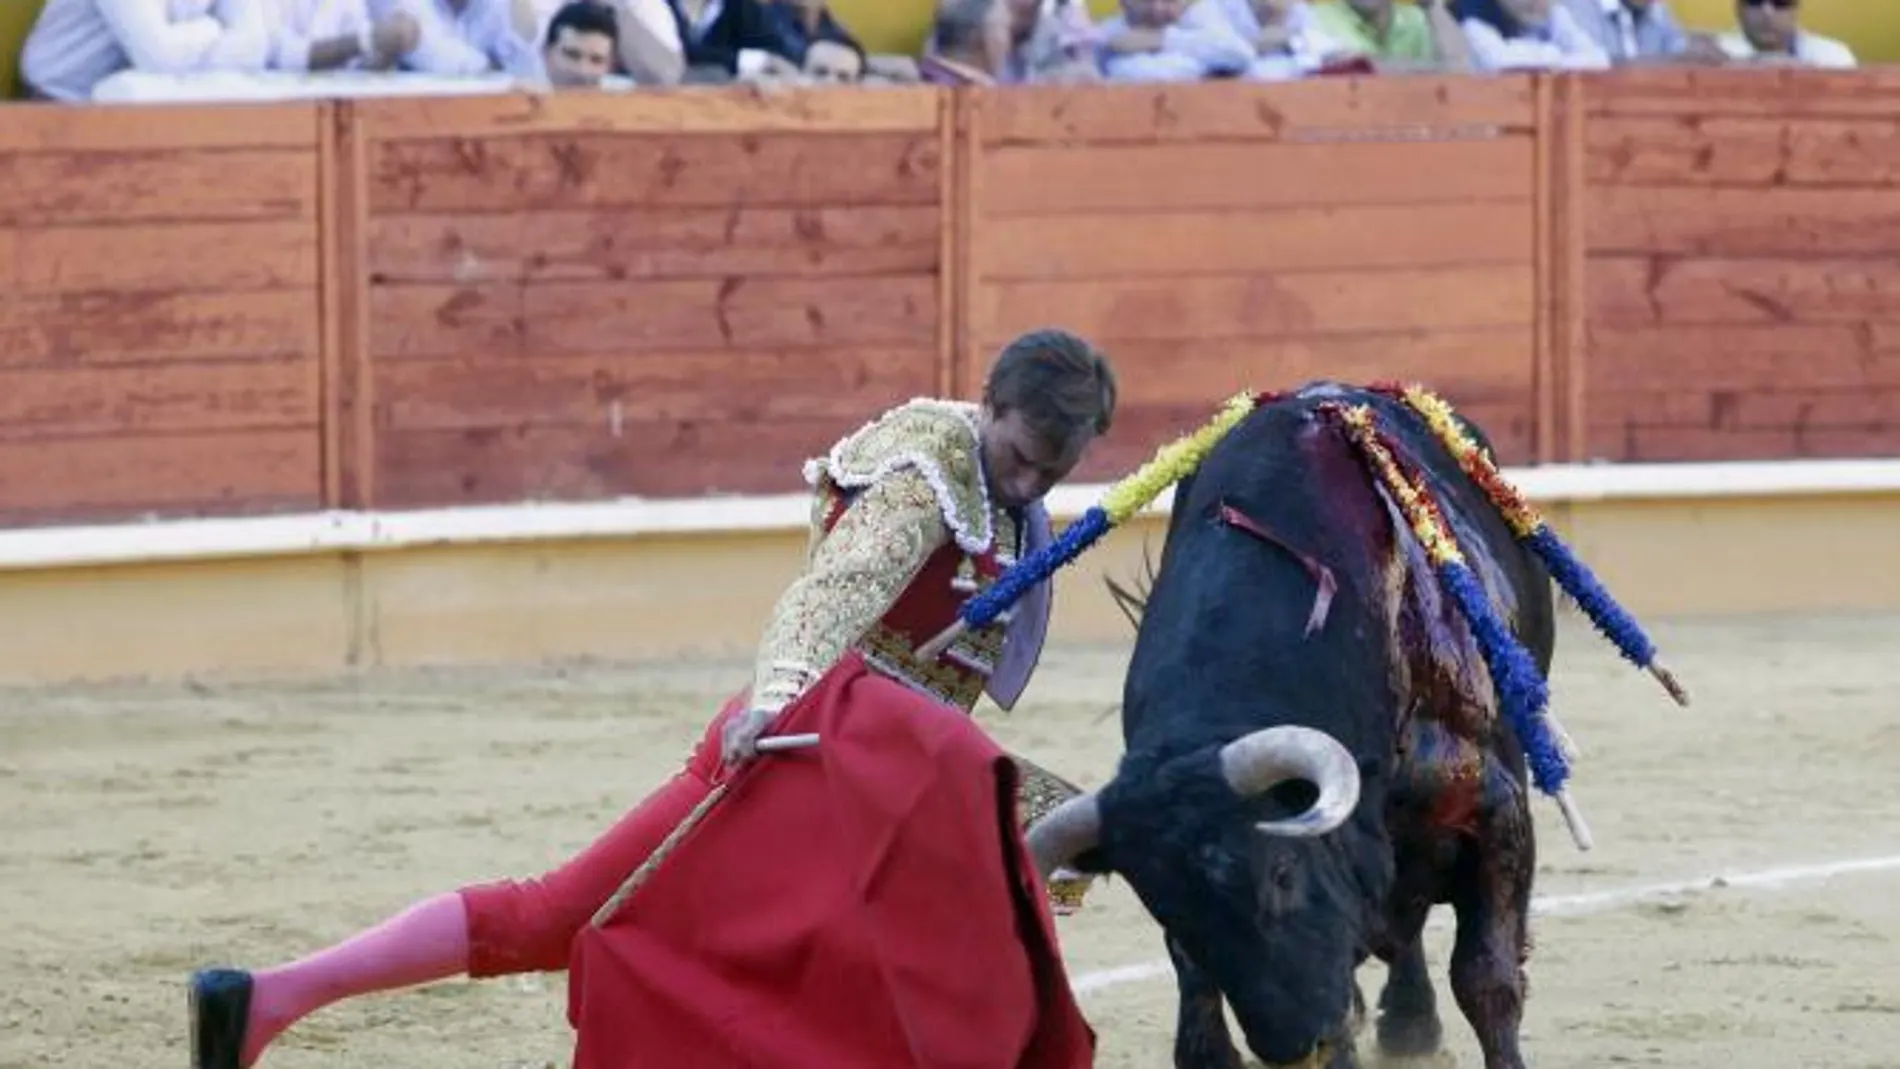 Manolo Sánchez se dobla con uno de sus toros de Los Bayones